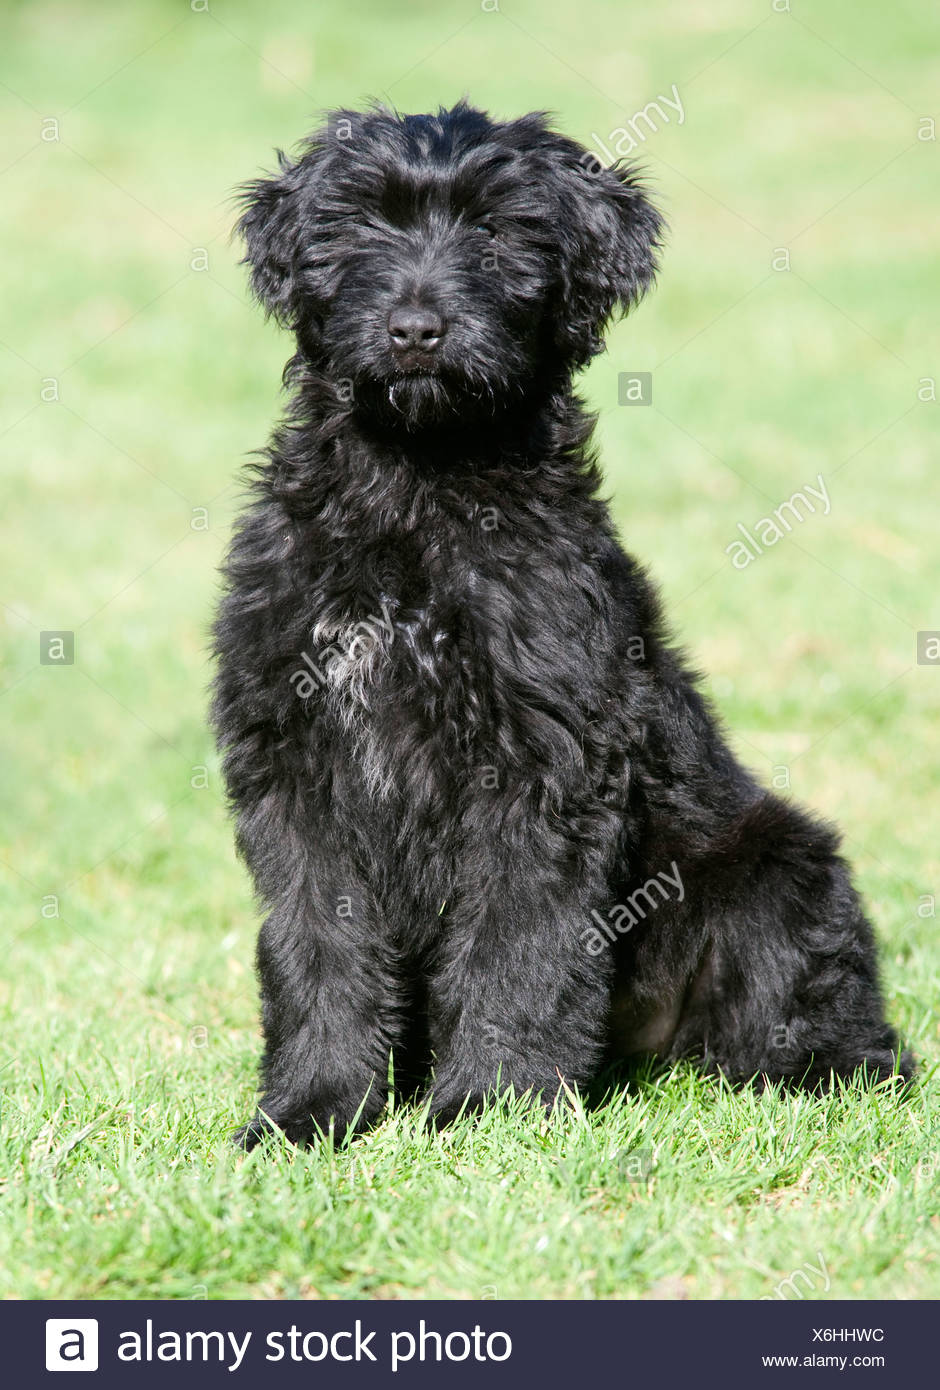 black briard puppy